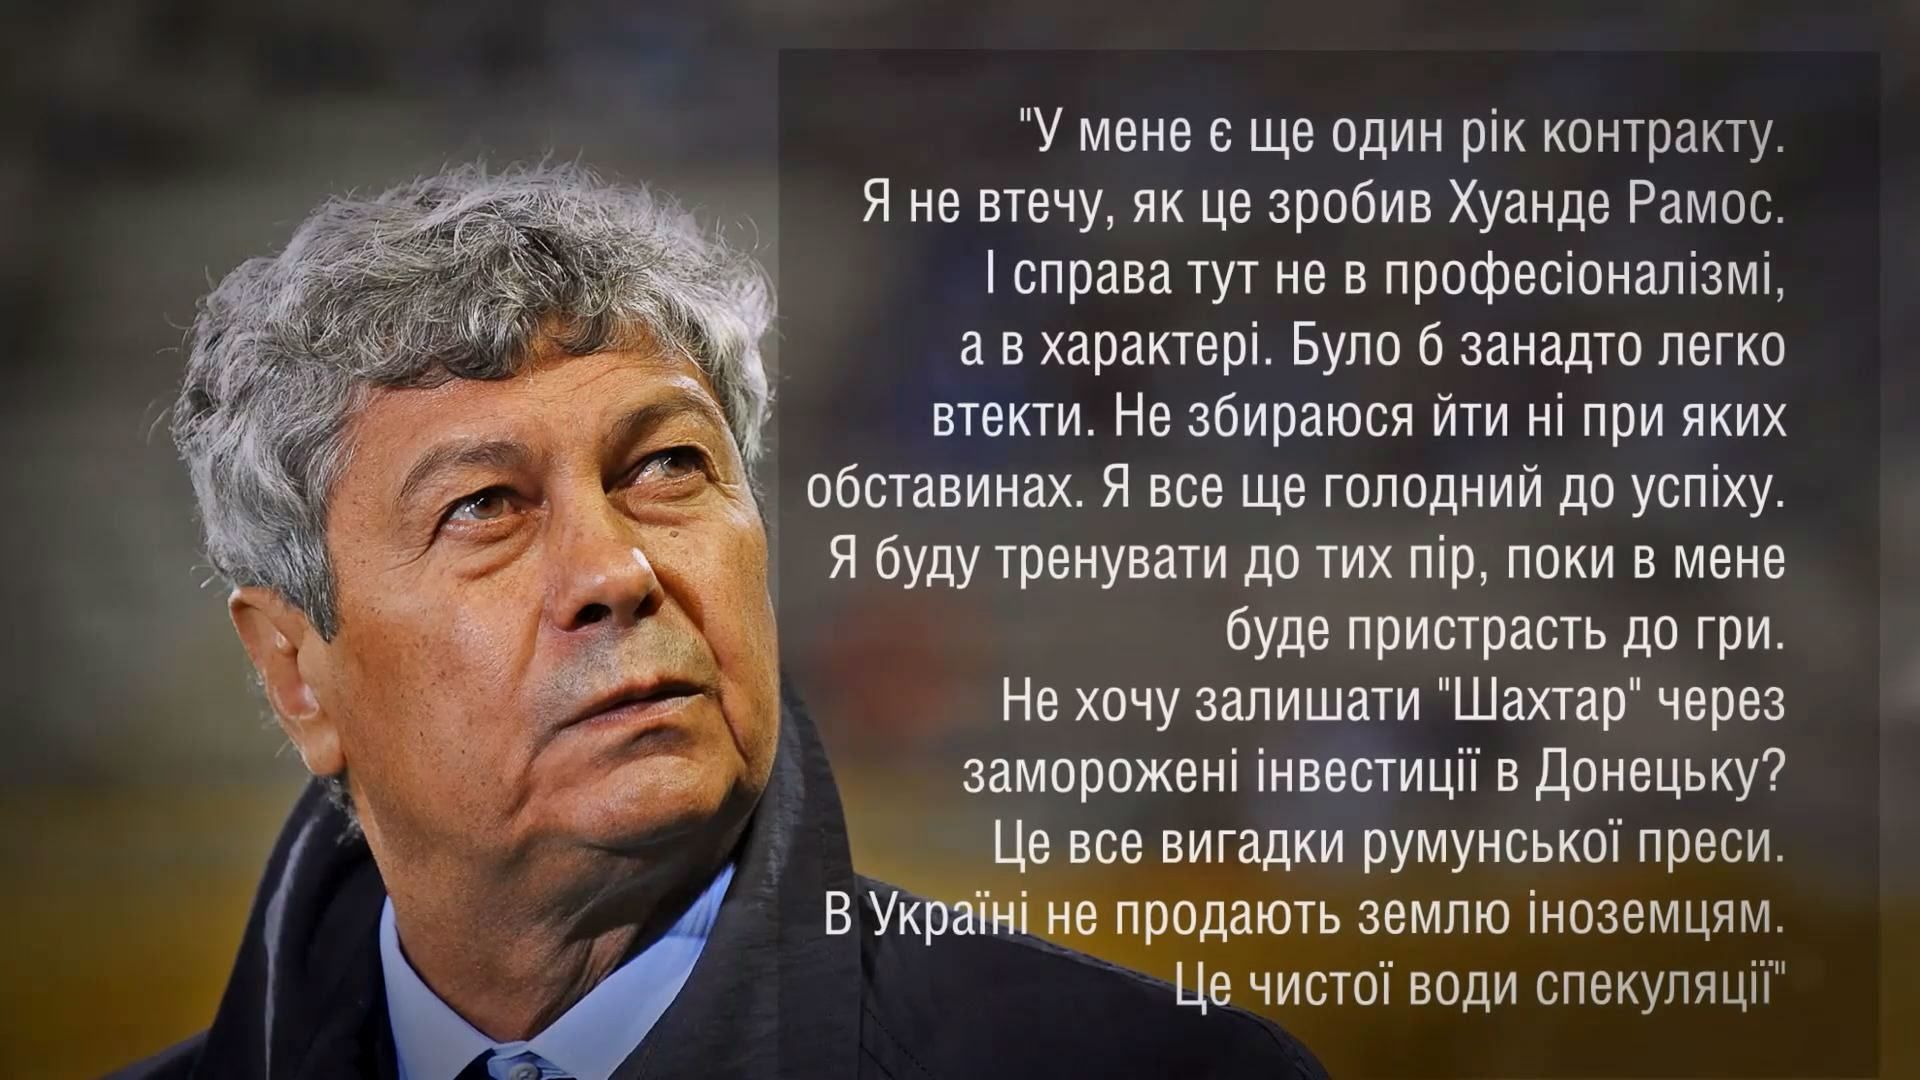 Луческу говорит, что не имеет инвестиций в Донецке